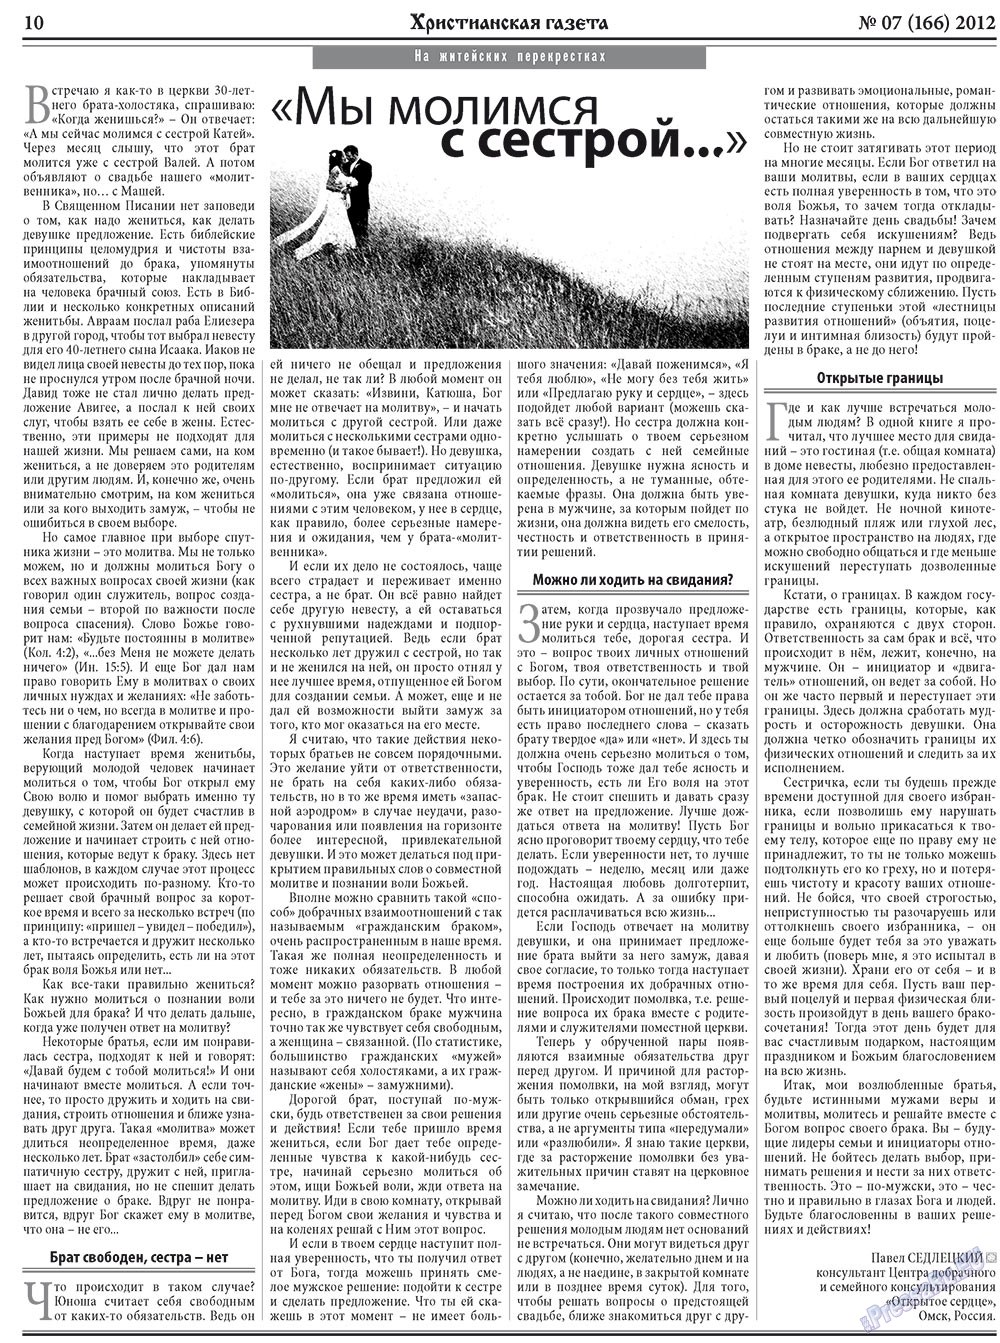 Христианская газета, газета. 2012 №7 стр.10